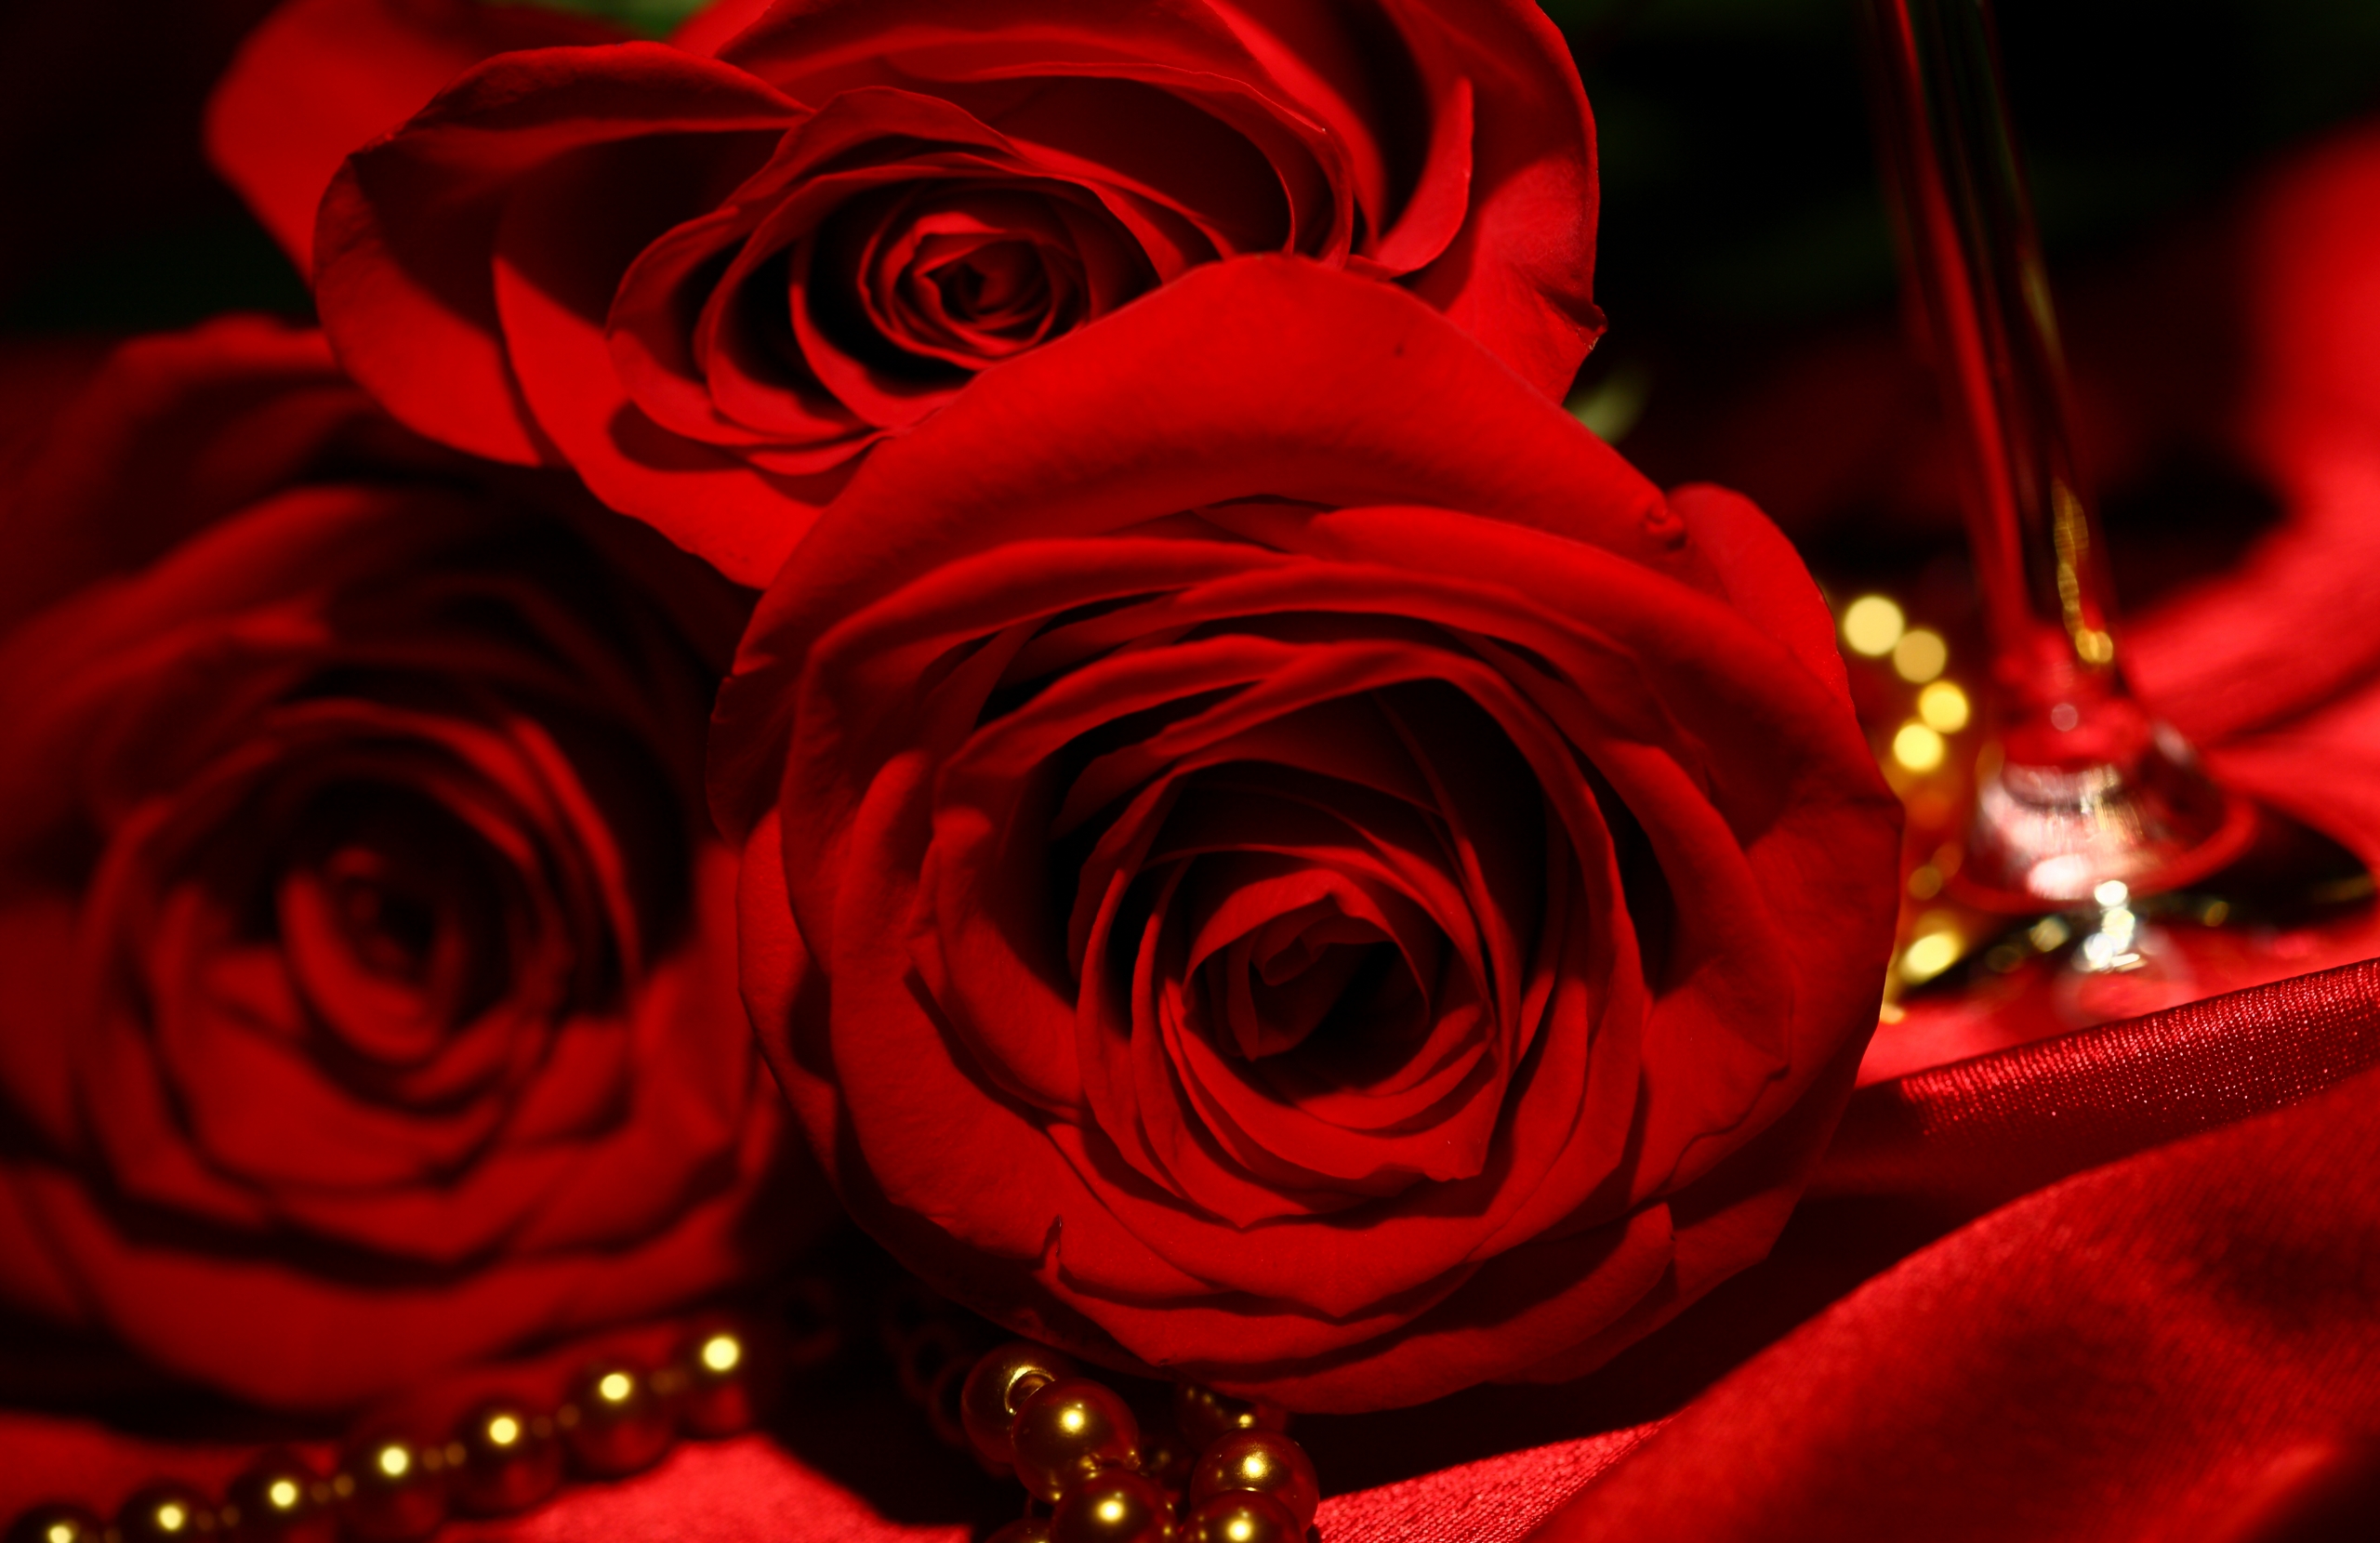 full hd rose wallpaper,red,garden roses,rose,flower,rose family